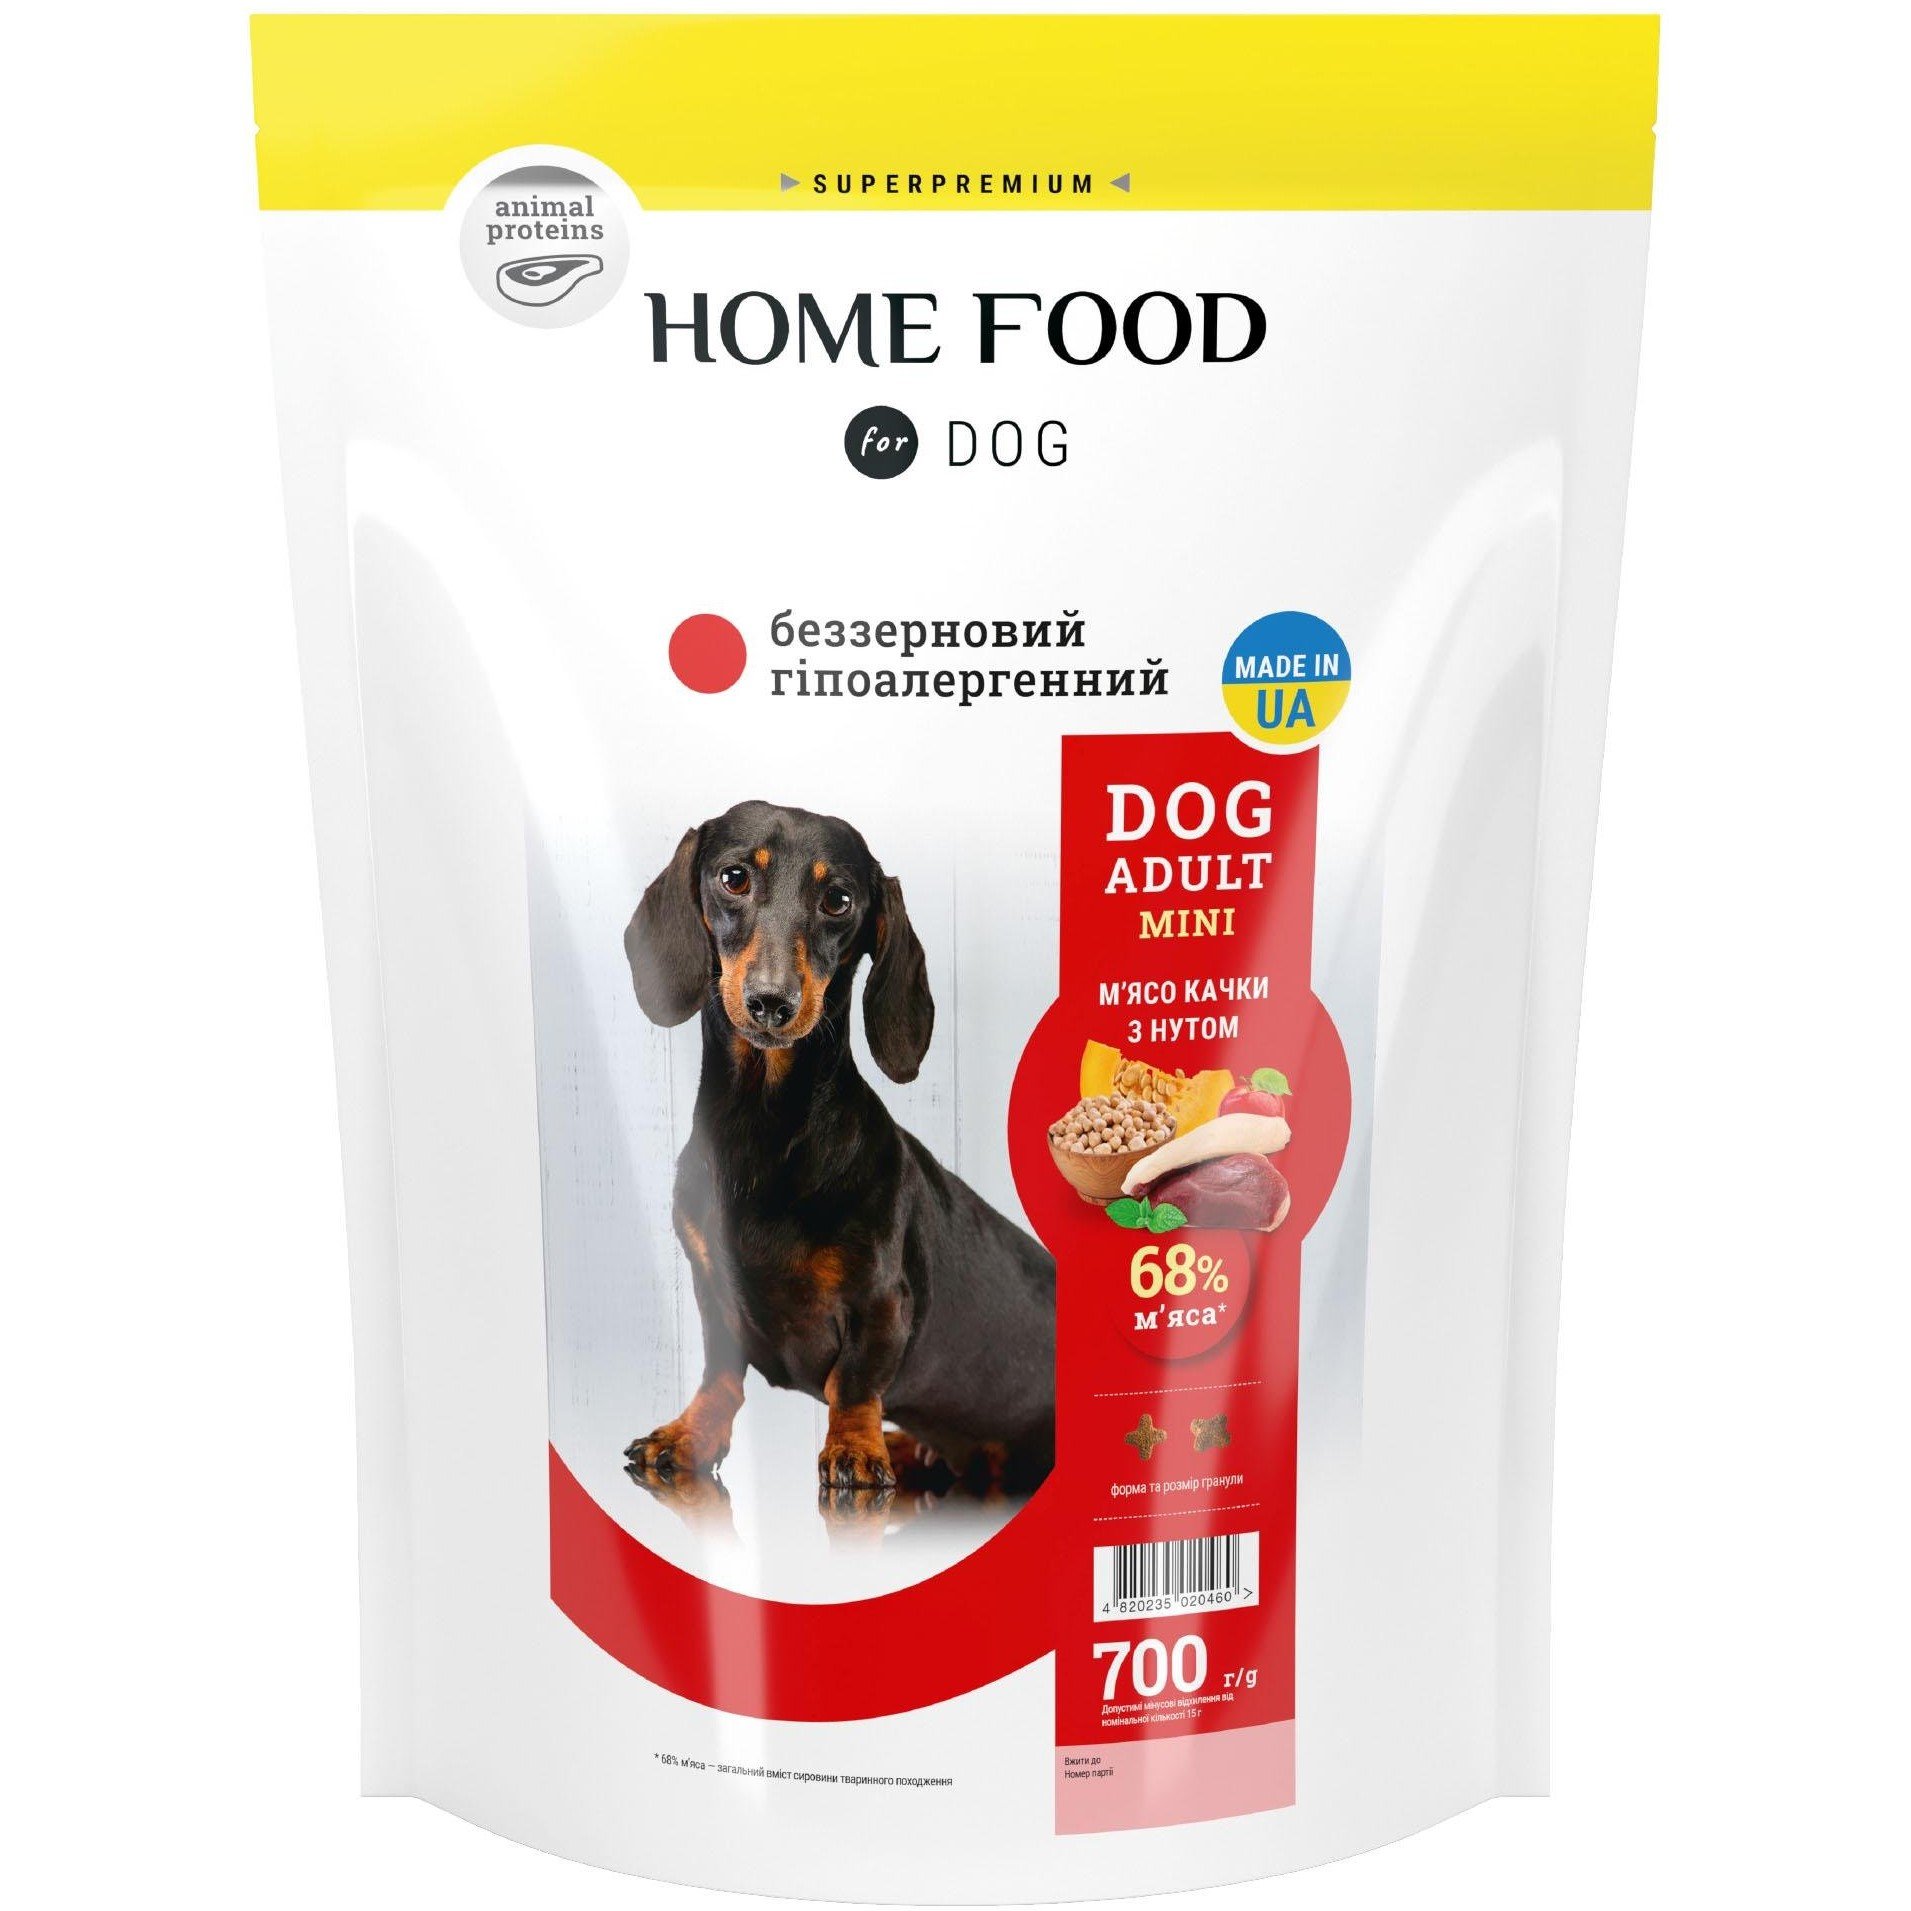 Беззерновий гіпоалергенний сухий корм для дорослих собак малих порід Home Food Dog Adult Mini М'ясо качки з нутом 700 г - фото 1